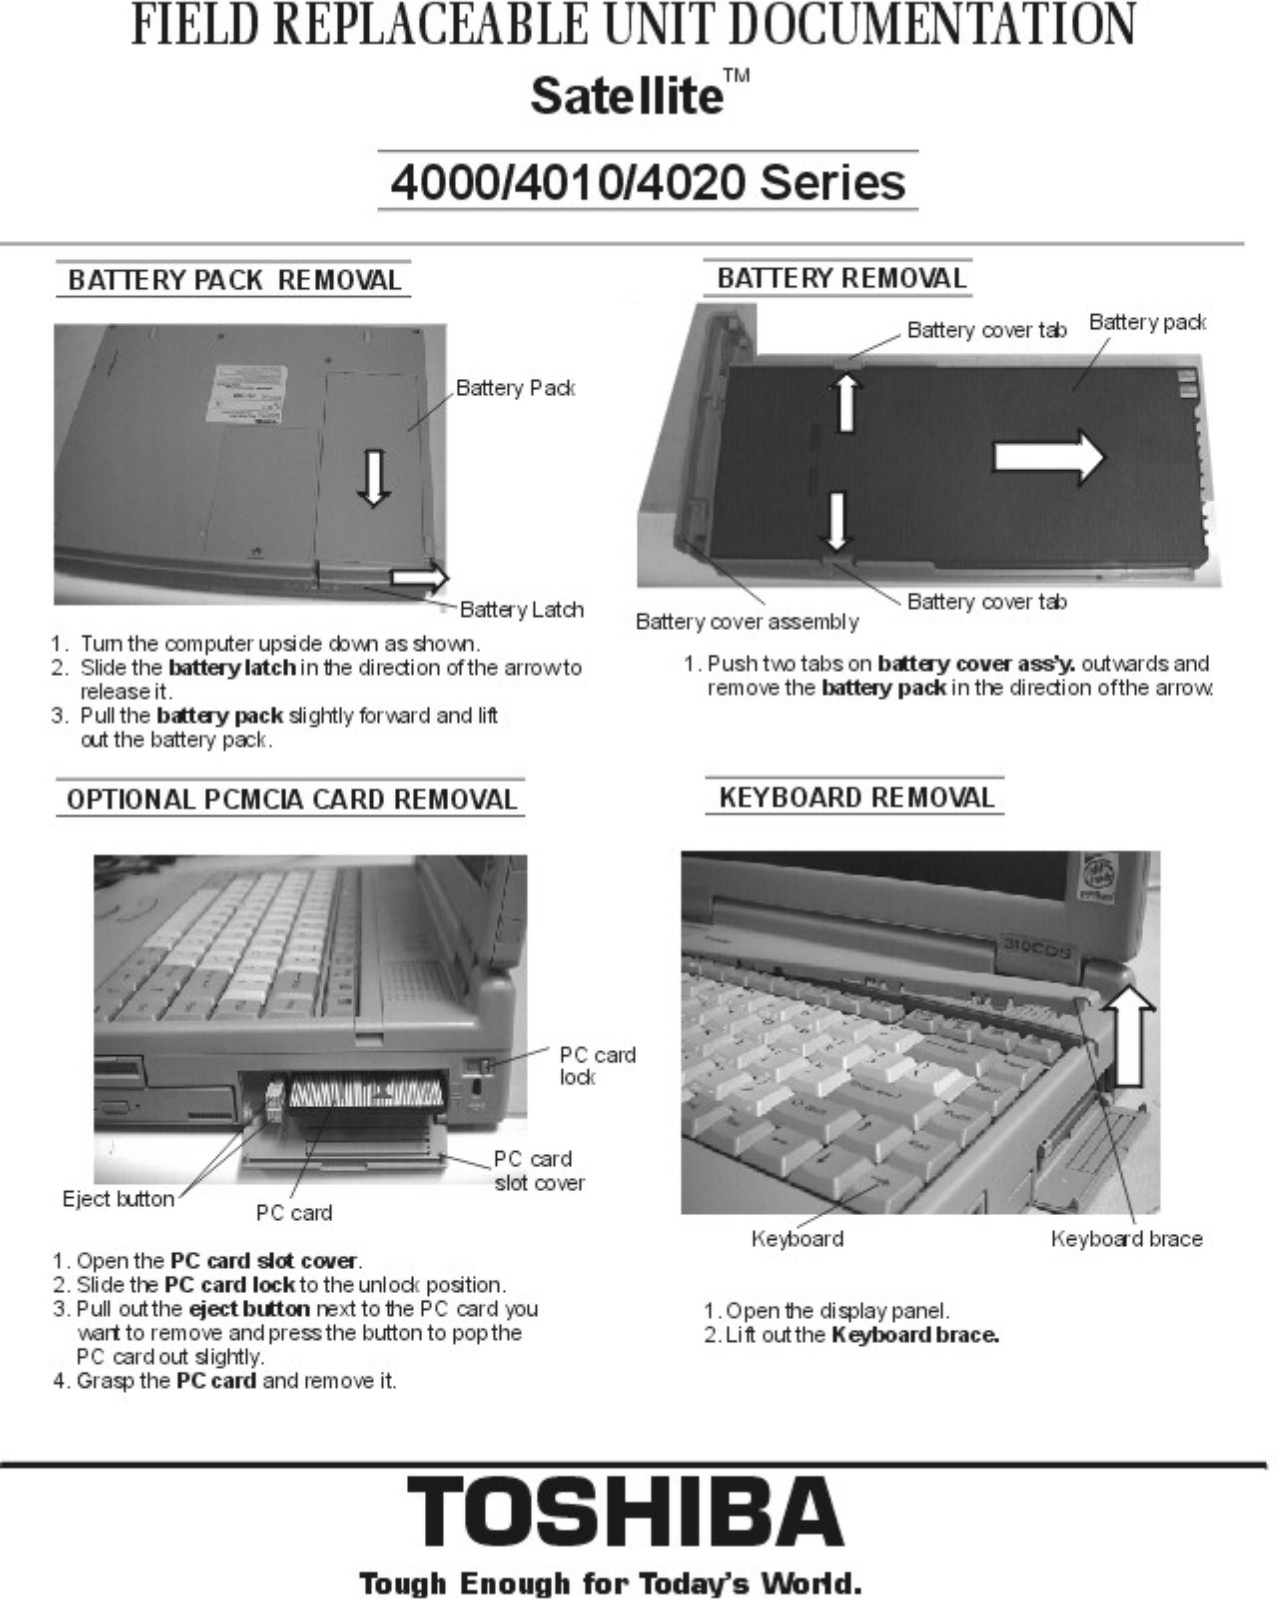 Toshiba Satellite 4020, Satellite 4010, Satellite 4000 Service Manual